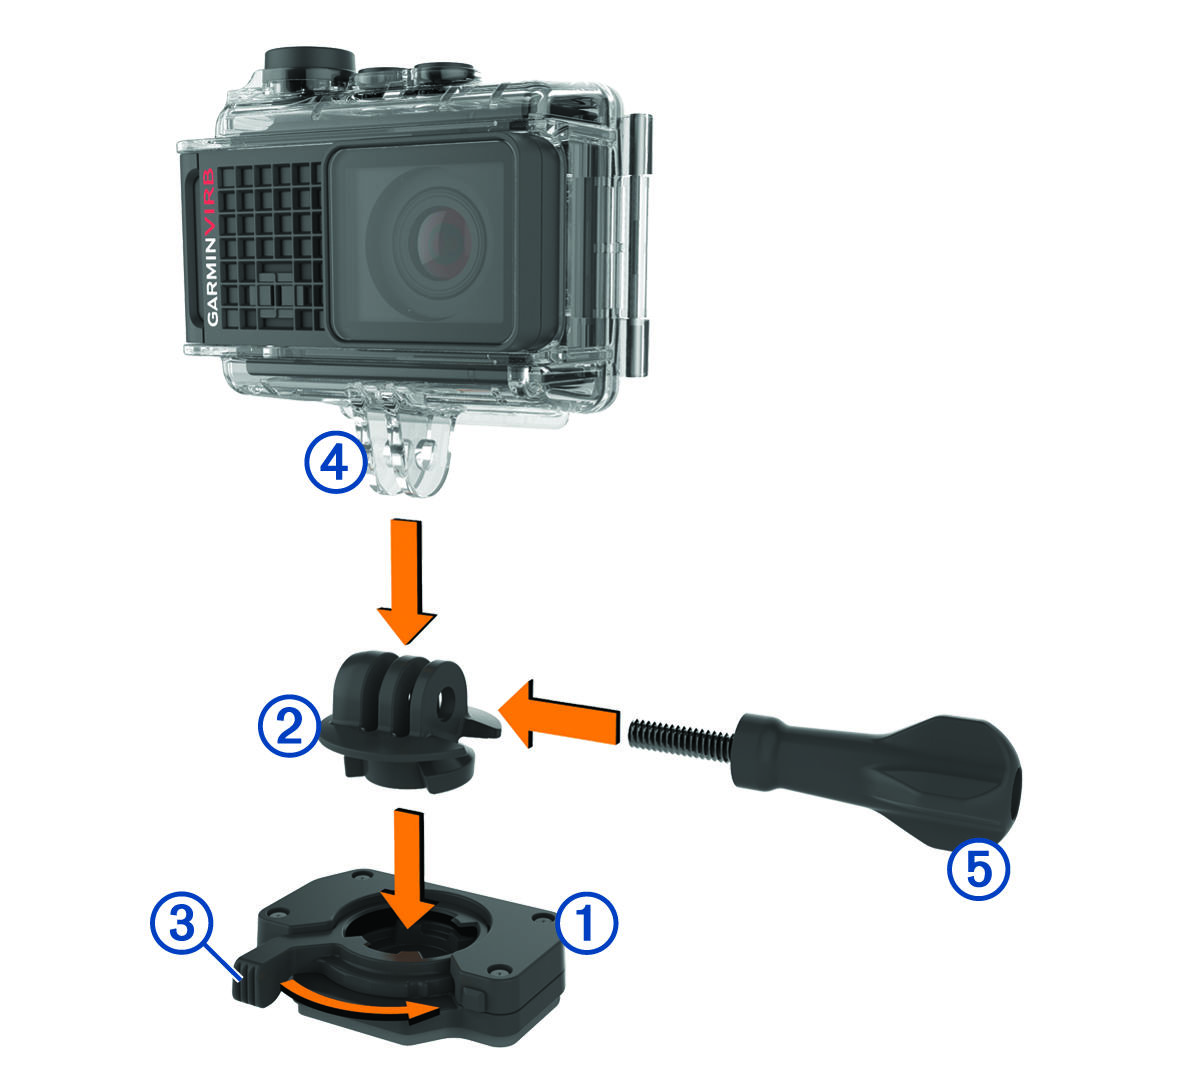 Adaptador, suporte da câmera e parafuso de aperto manual sendo inseridos na base de montagem com alavanca com legendas